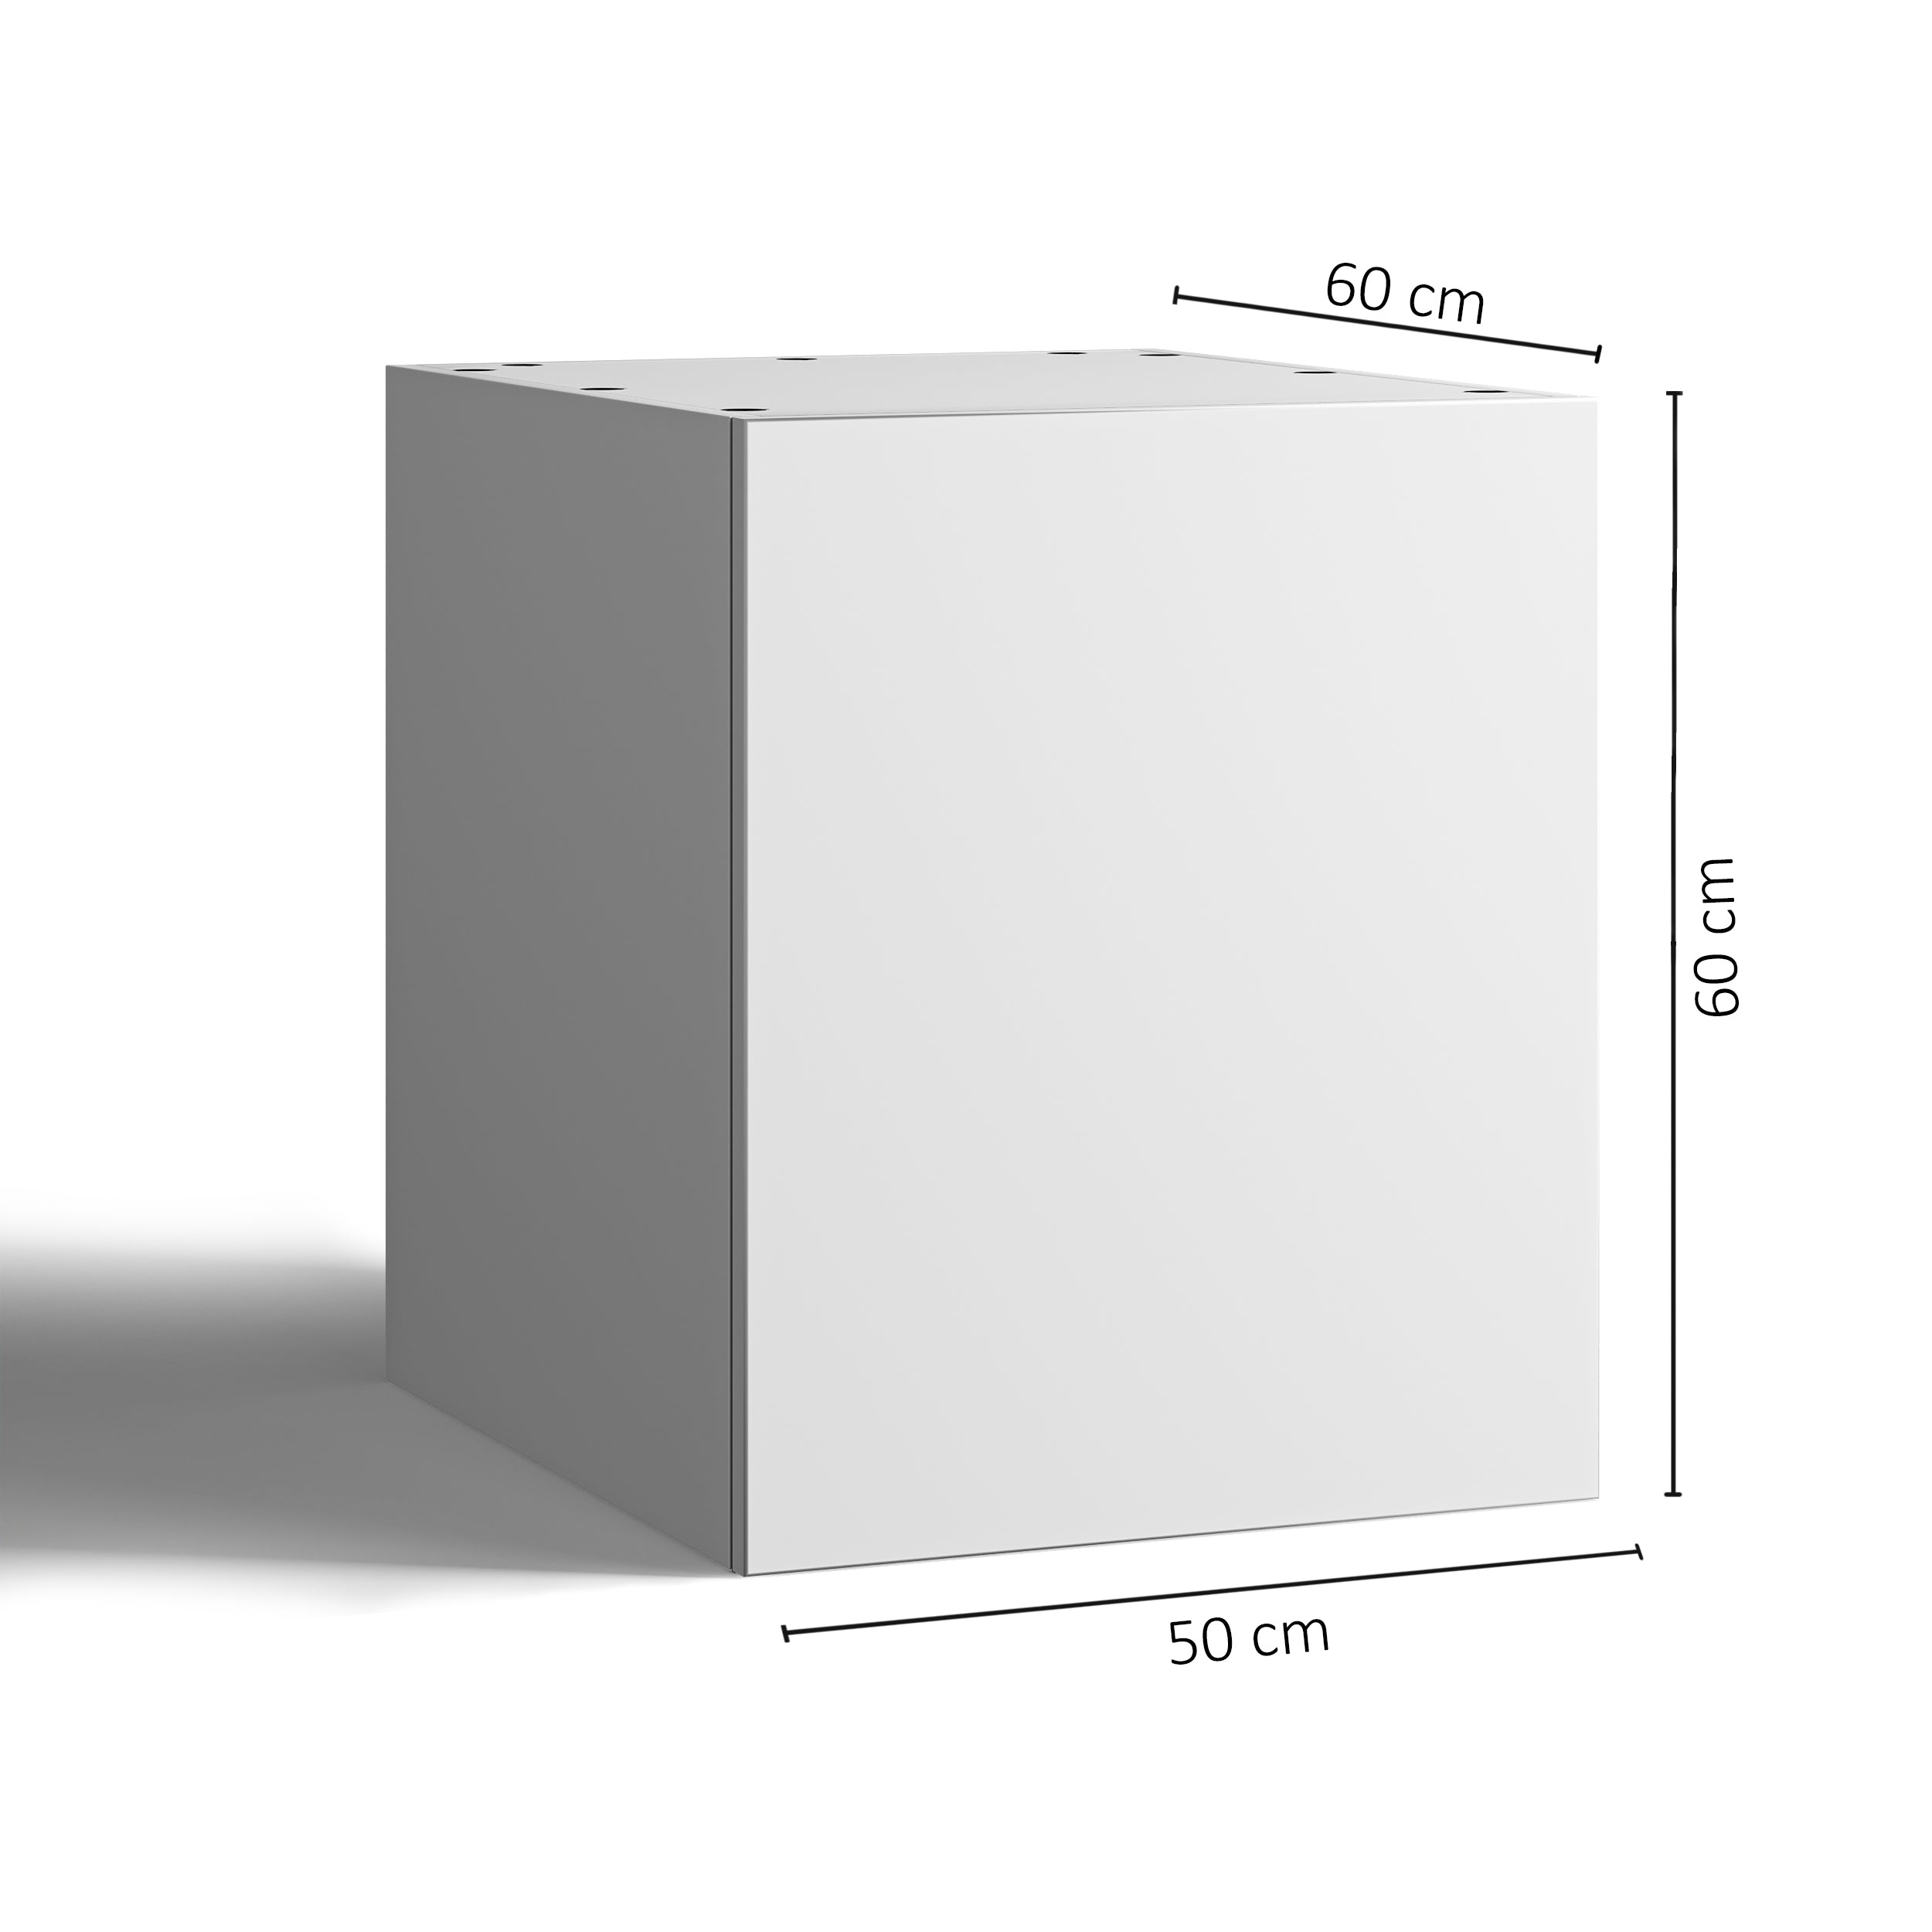 50x60 - Cabinet (58cm D) w Door - Woodgrain - PAX